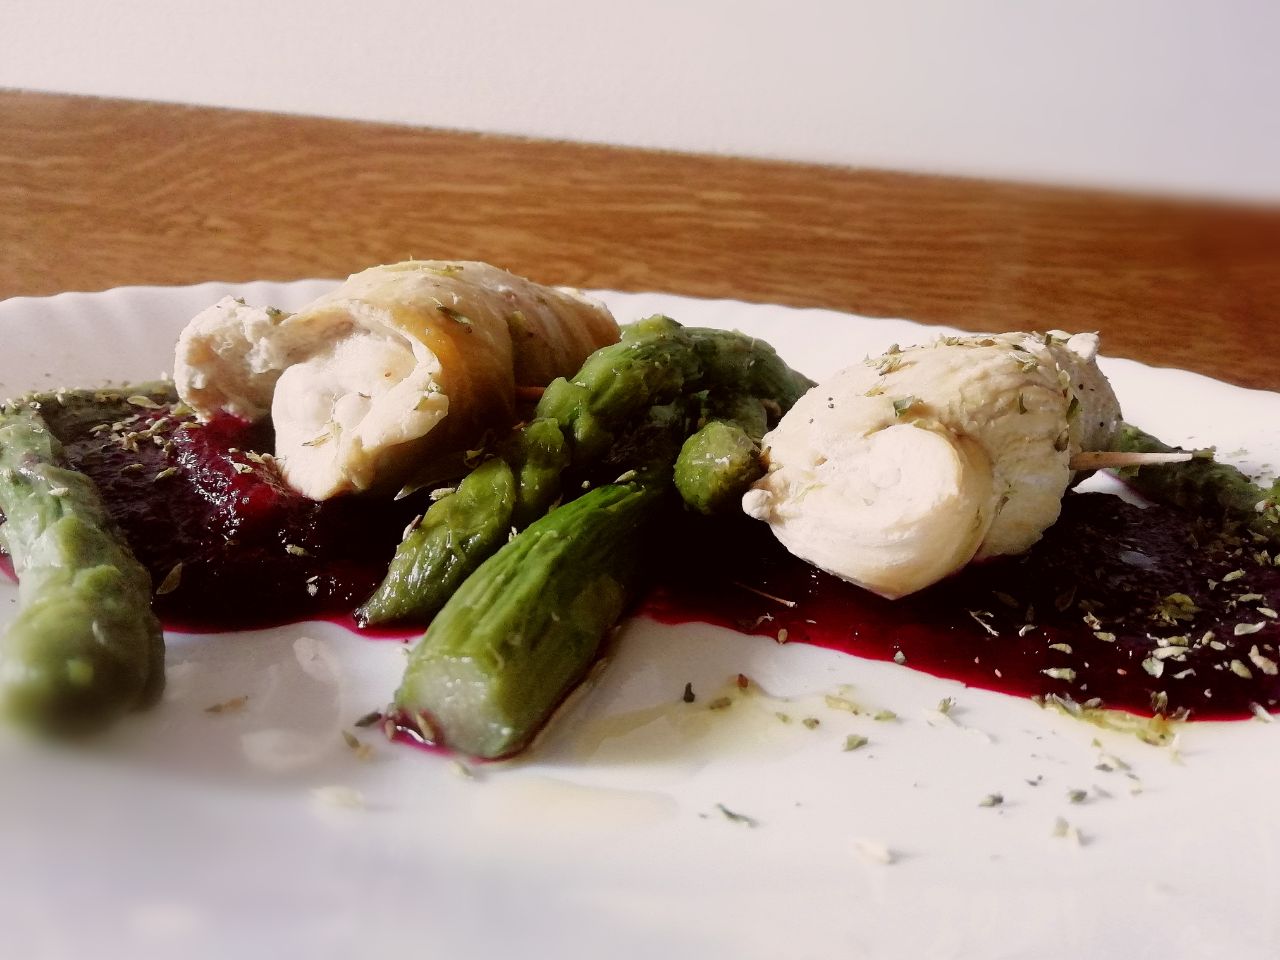 Secondi piatti a base di carne: pollo ruspante asparagi e mousse di rape rosse con olio extravergine di oliva!